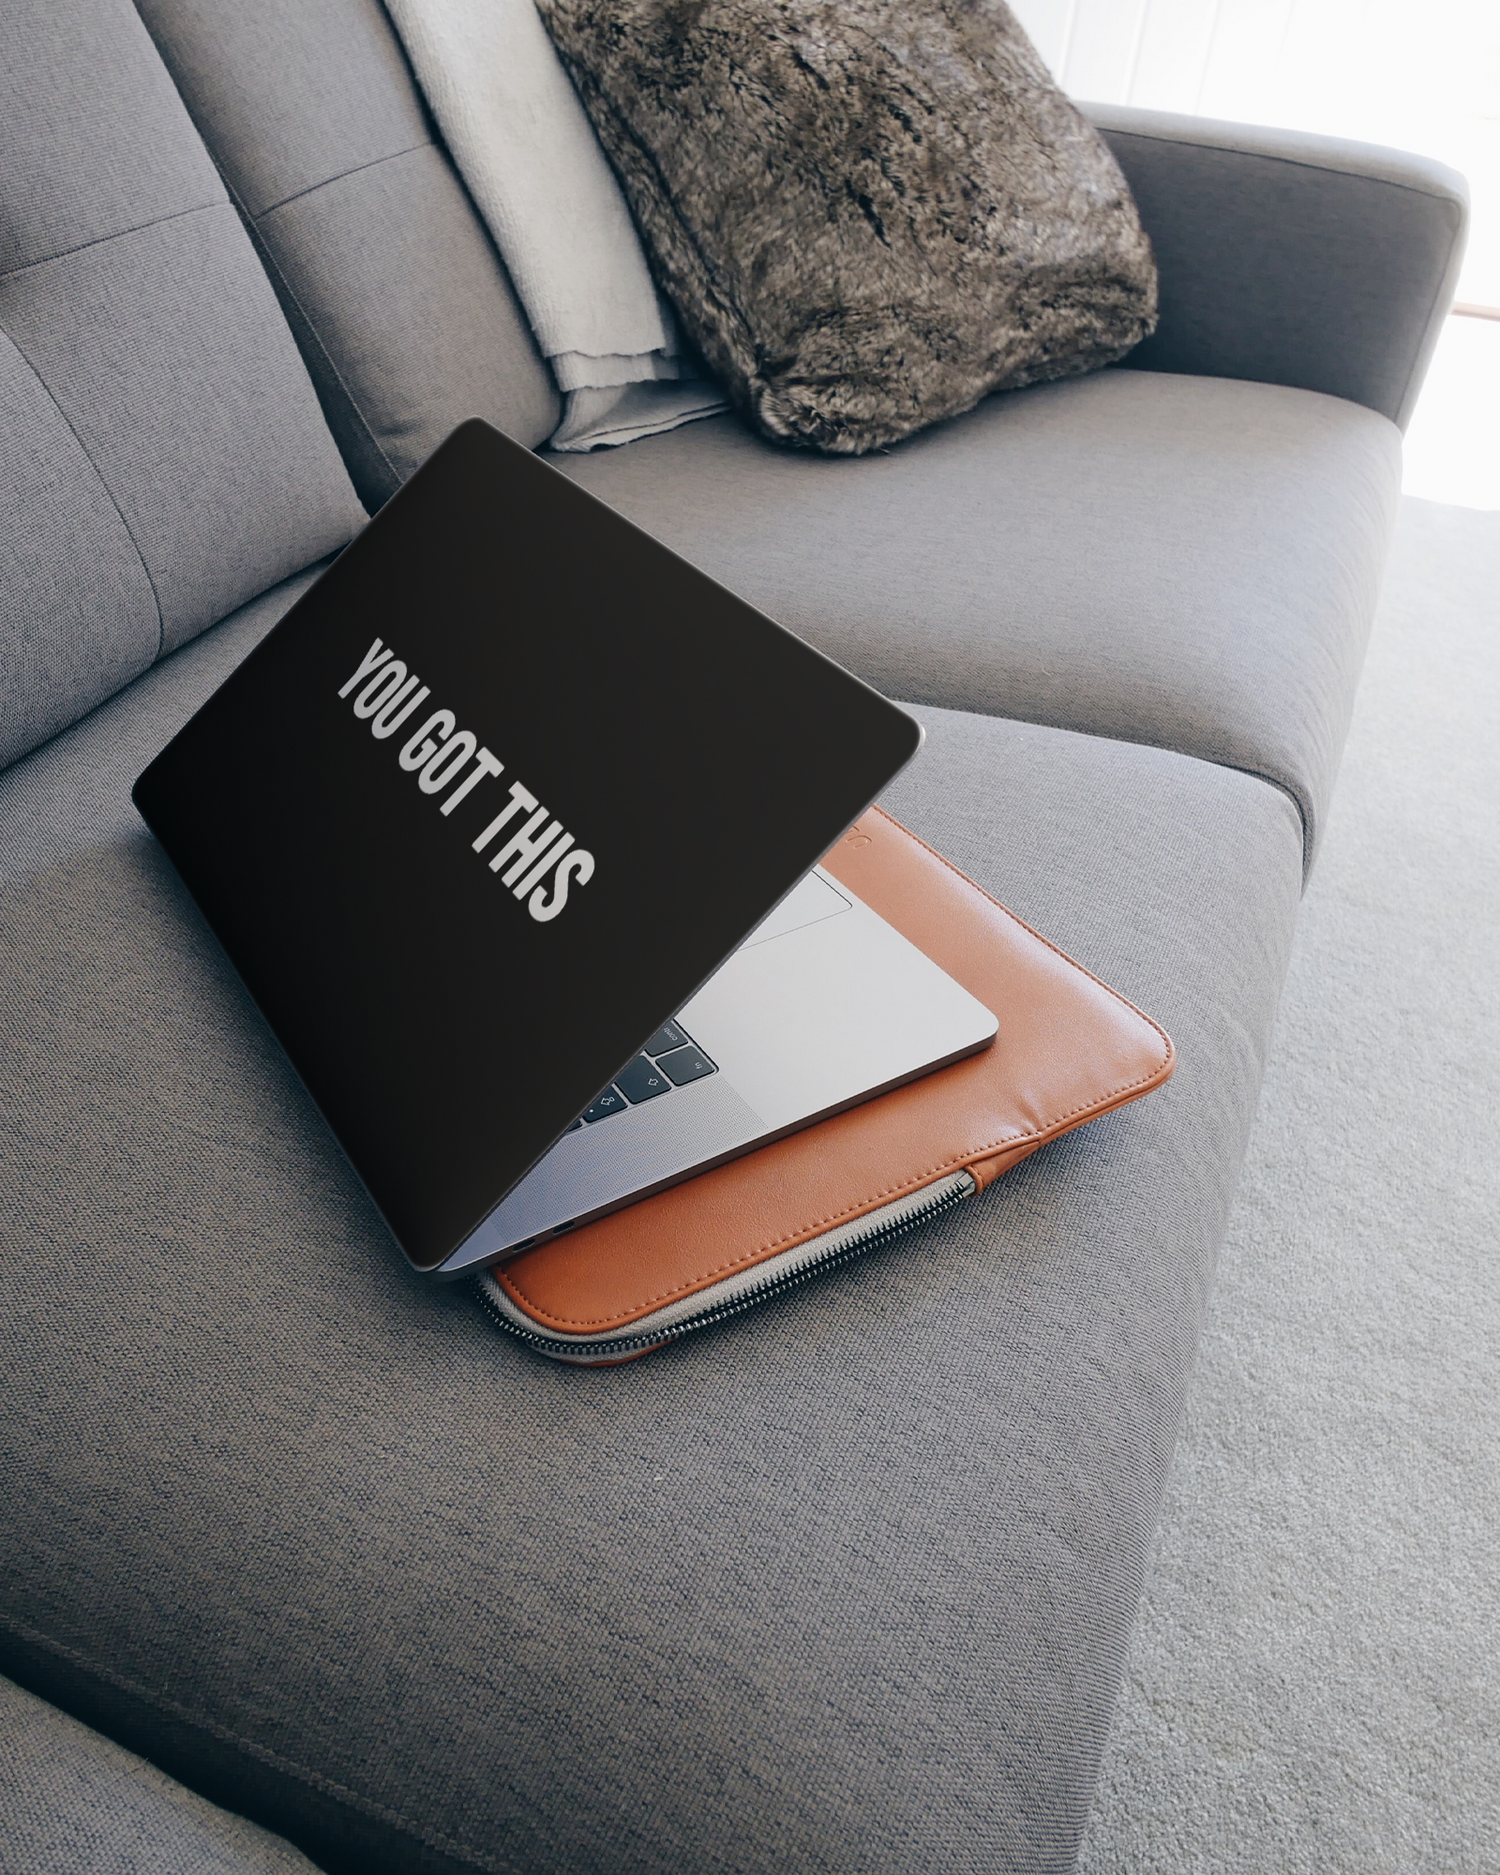 You Got This Black Laptop Aufkleber für 15 Zoll Apple MacBooks auf dem Sofa